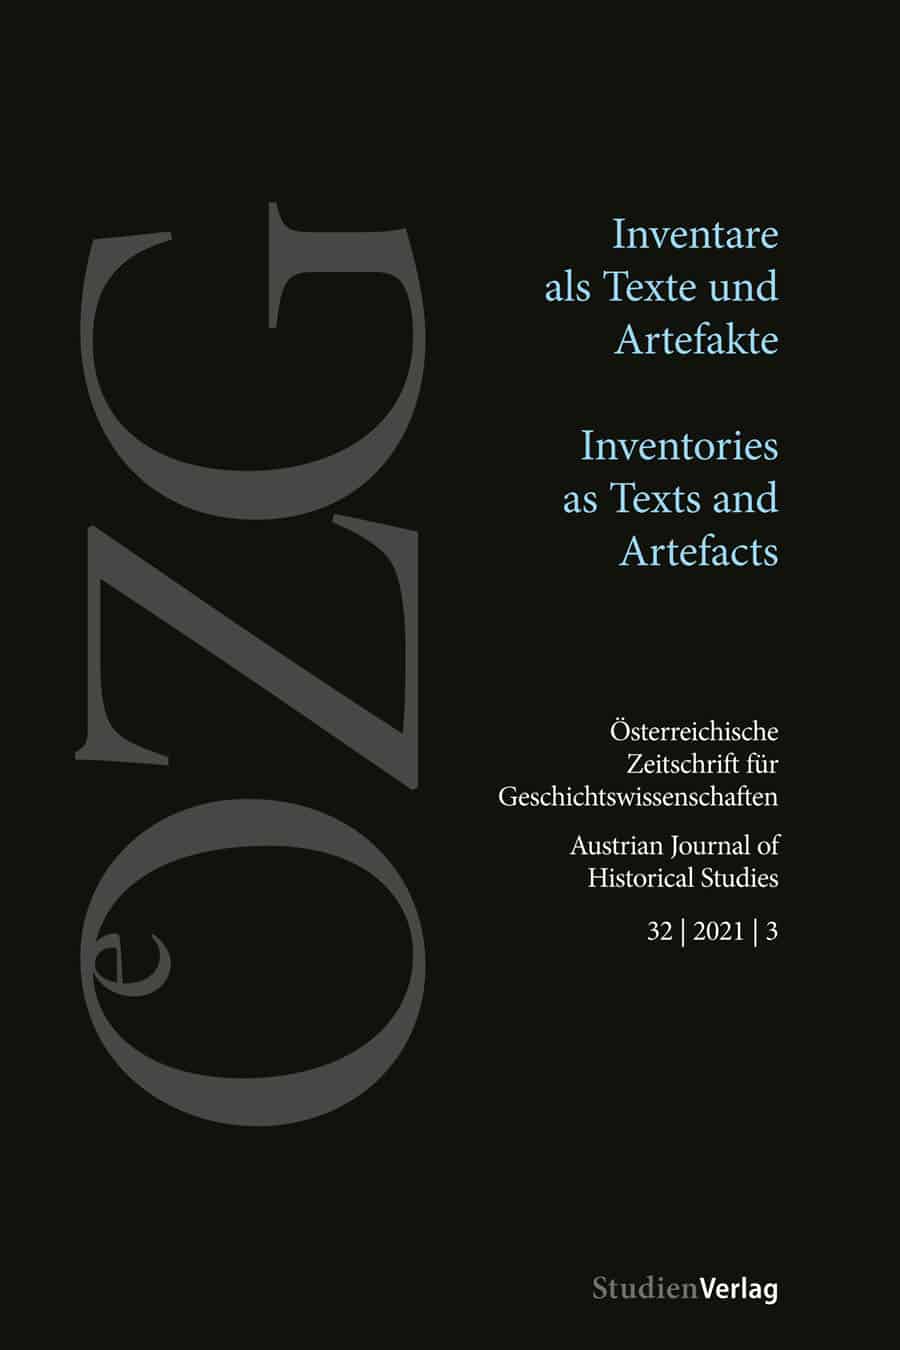 Christina Antenhofer (Hg.): Inventare als Texte und Artefakte: Methodische Herangehensweisen und Herausforderungen.